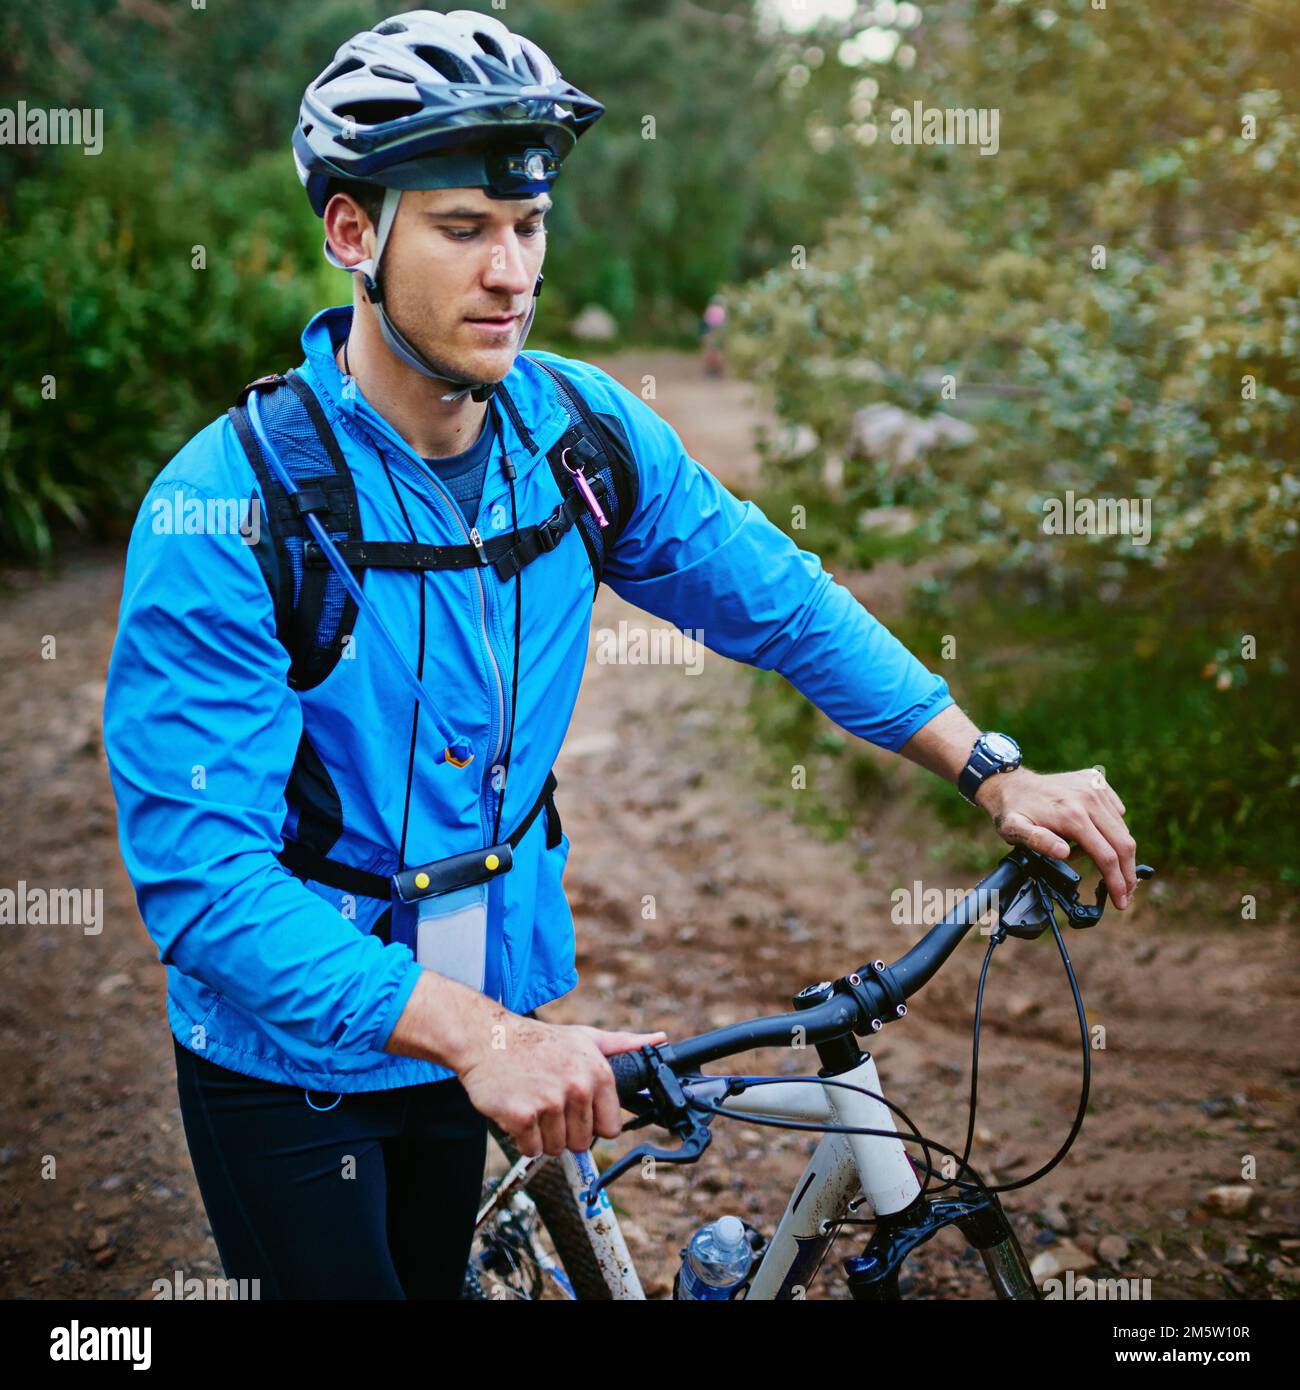 Pronti a prendere il sentiero. un ciclista maschio fuori per un giro sulla sua mountain bike. Foto Stock